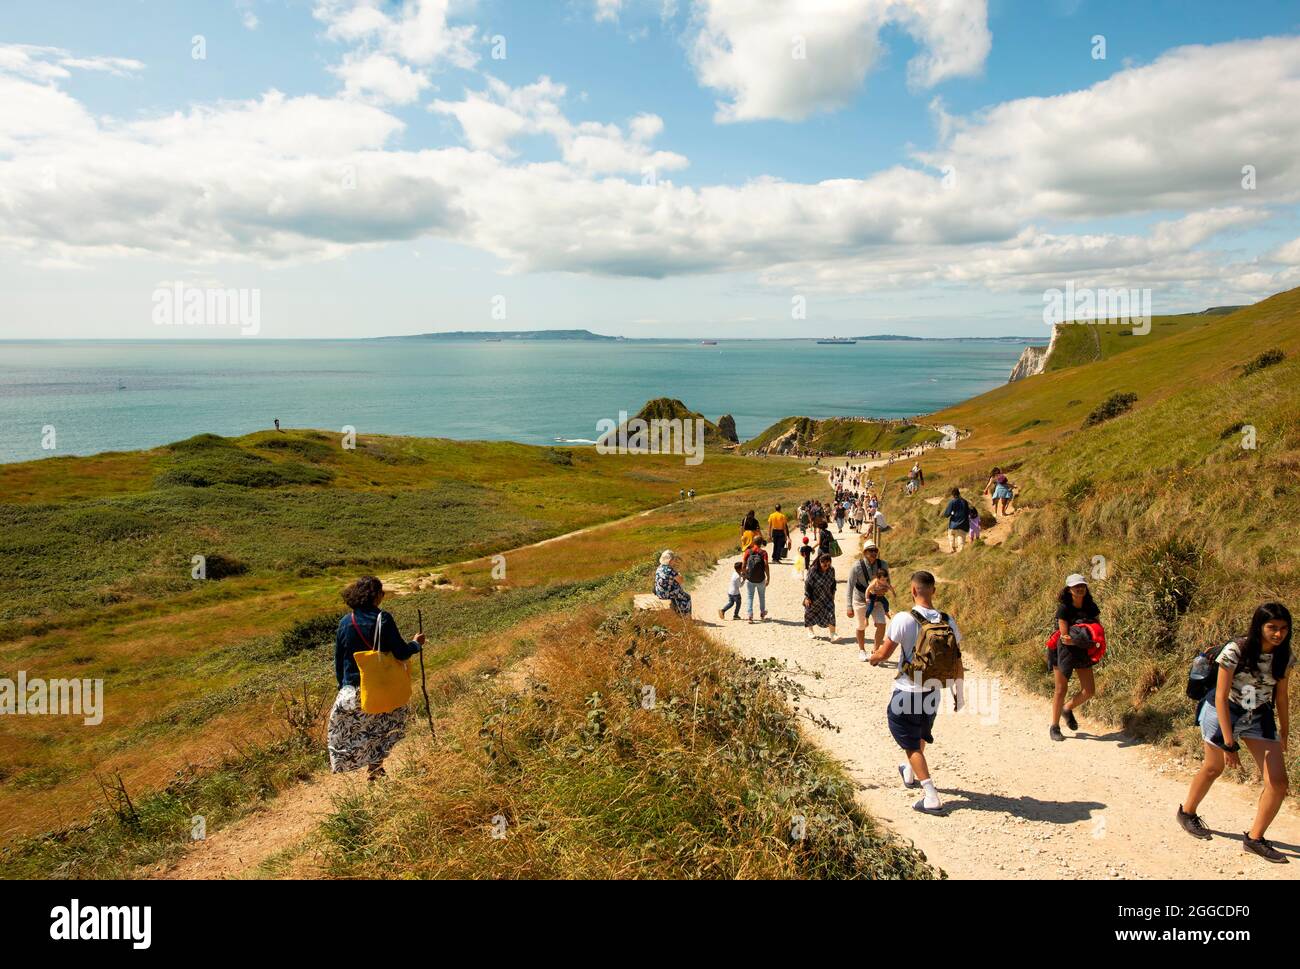 Les gens qui descendent le sentier jusqu’à la porte Durdle, le paysage le plus emblématique de la côte jurassique avec son arche de calcaire naturel. Dorset, Royaume-Uni. Août 2021 Banque D'Images